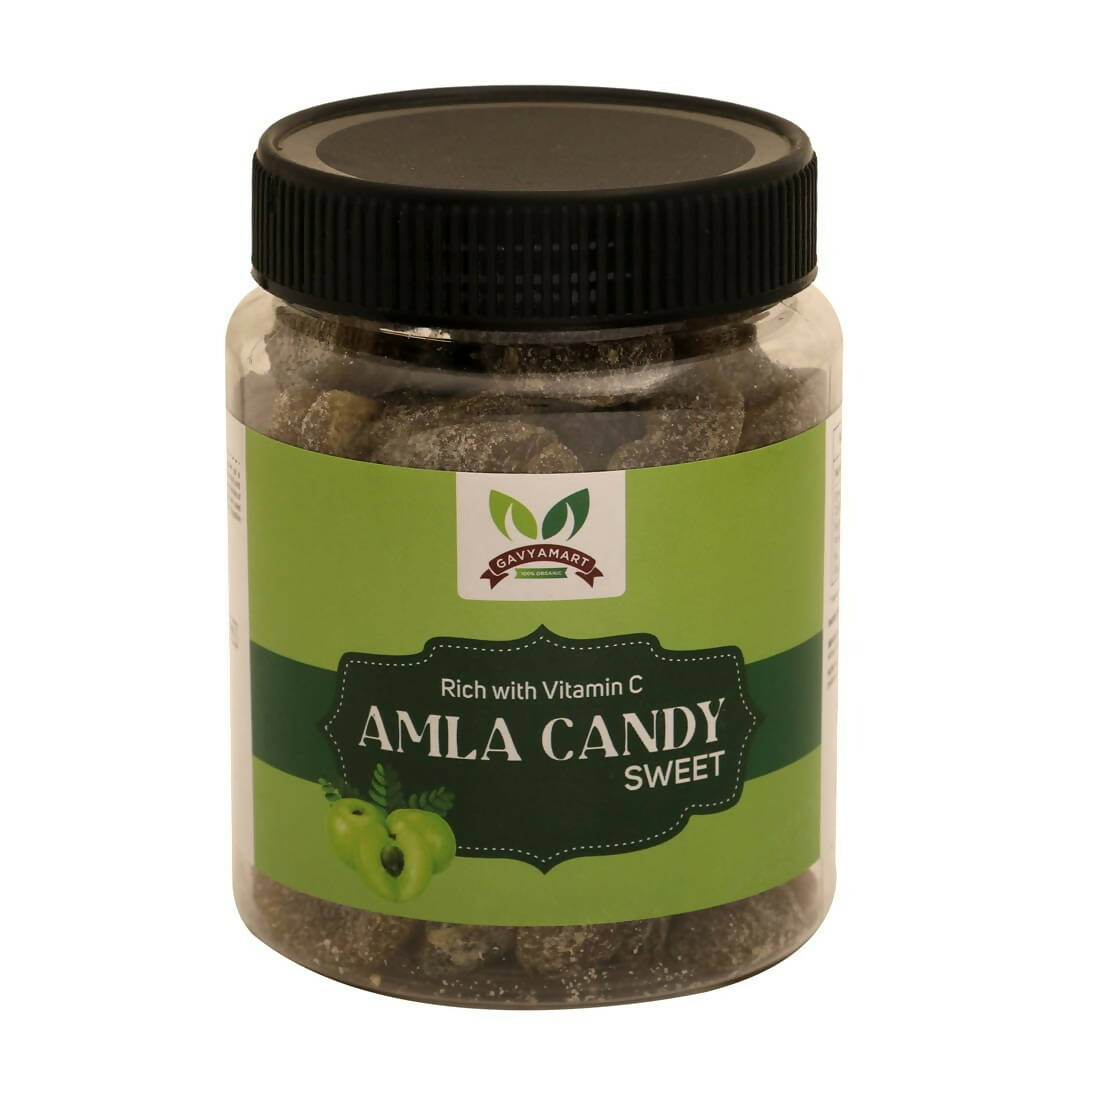 Gavyamart Premium Sweet Amla Candy - Distacart